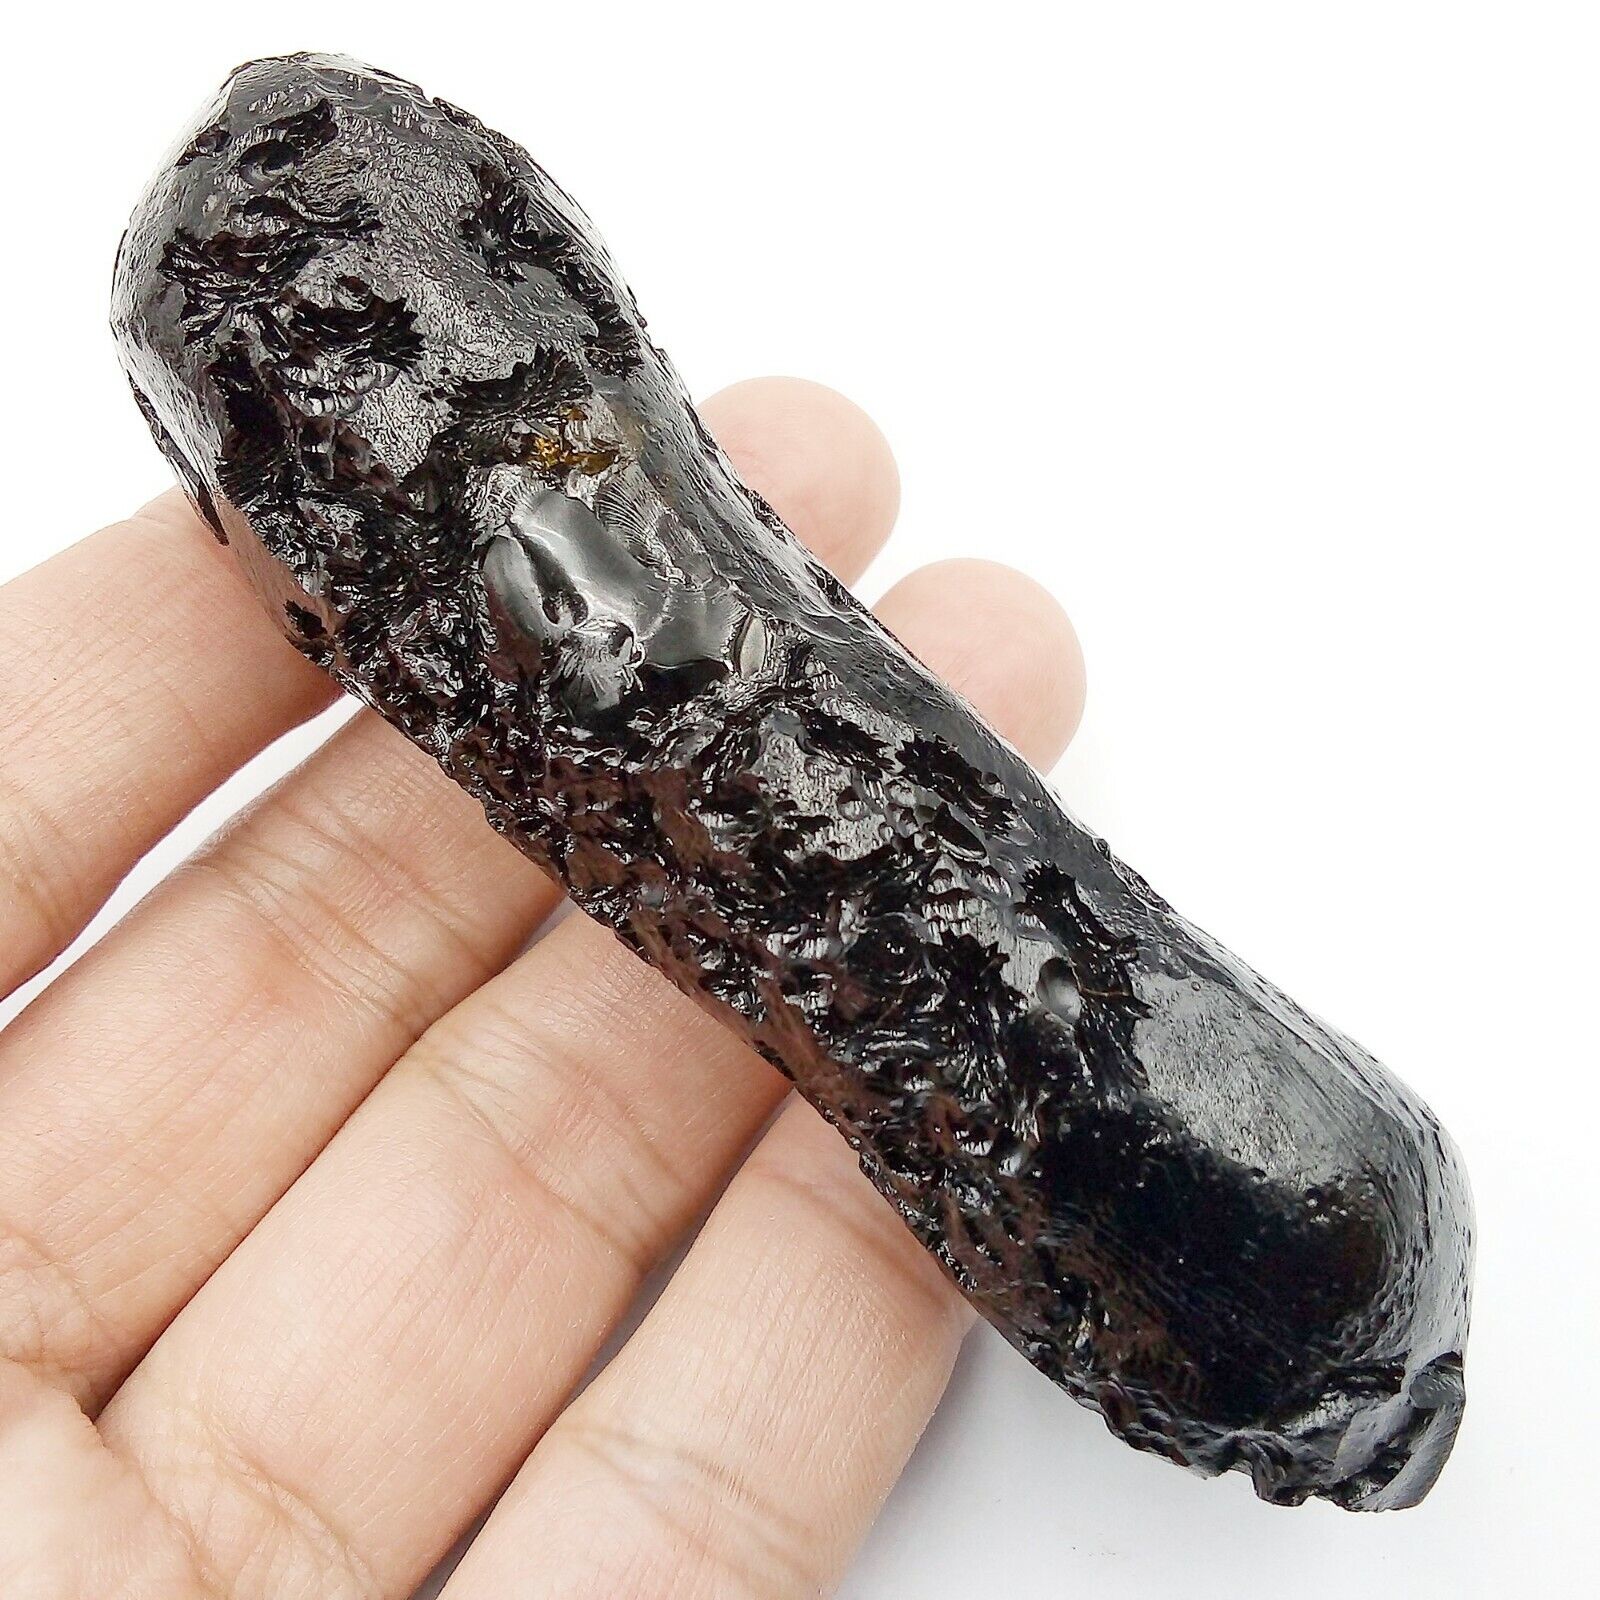 96 g. Museum Grade Rare Anda Skin Indochinite Tektite Meteorite Cracked Rock